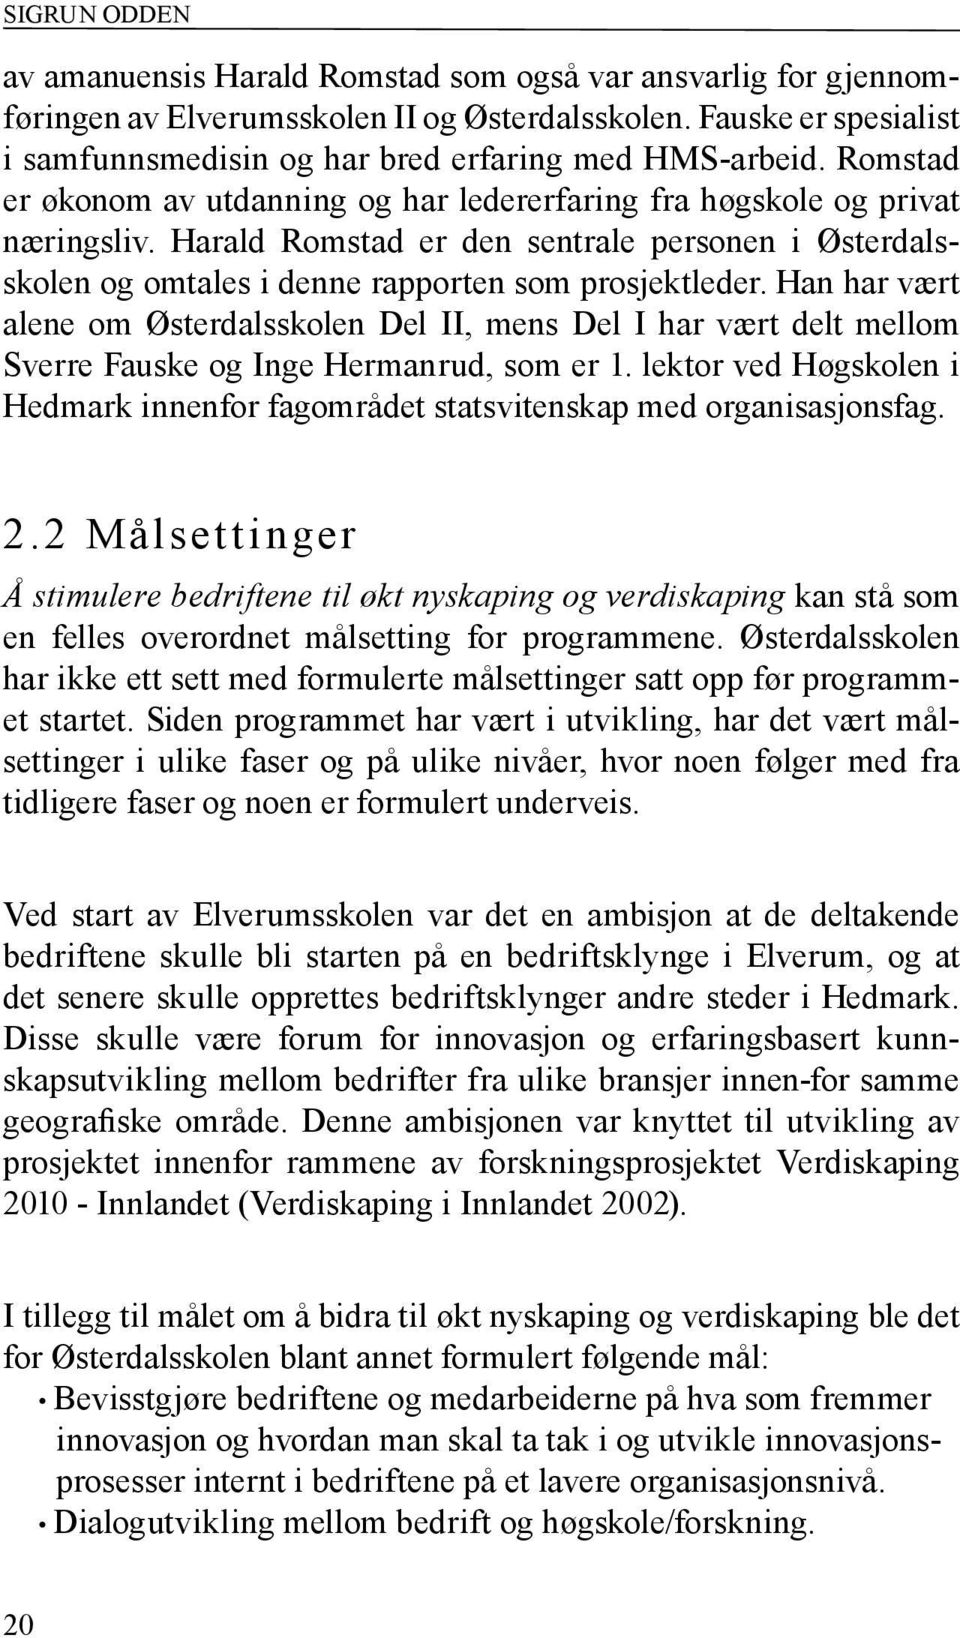 Harald Romstad er den sentrale personen i Østerdalsskolen og omtales i denne rapporten som prosjektleder.